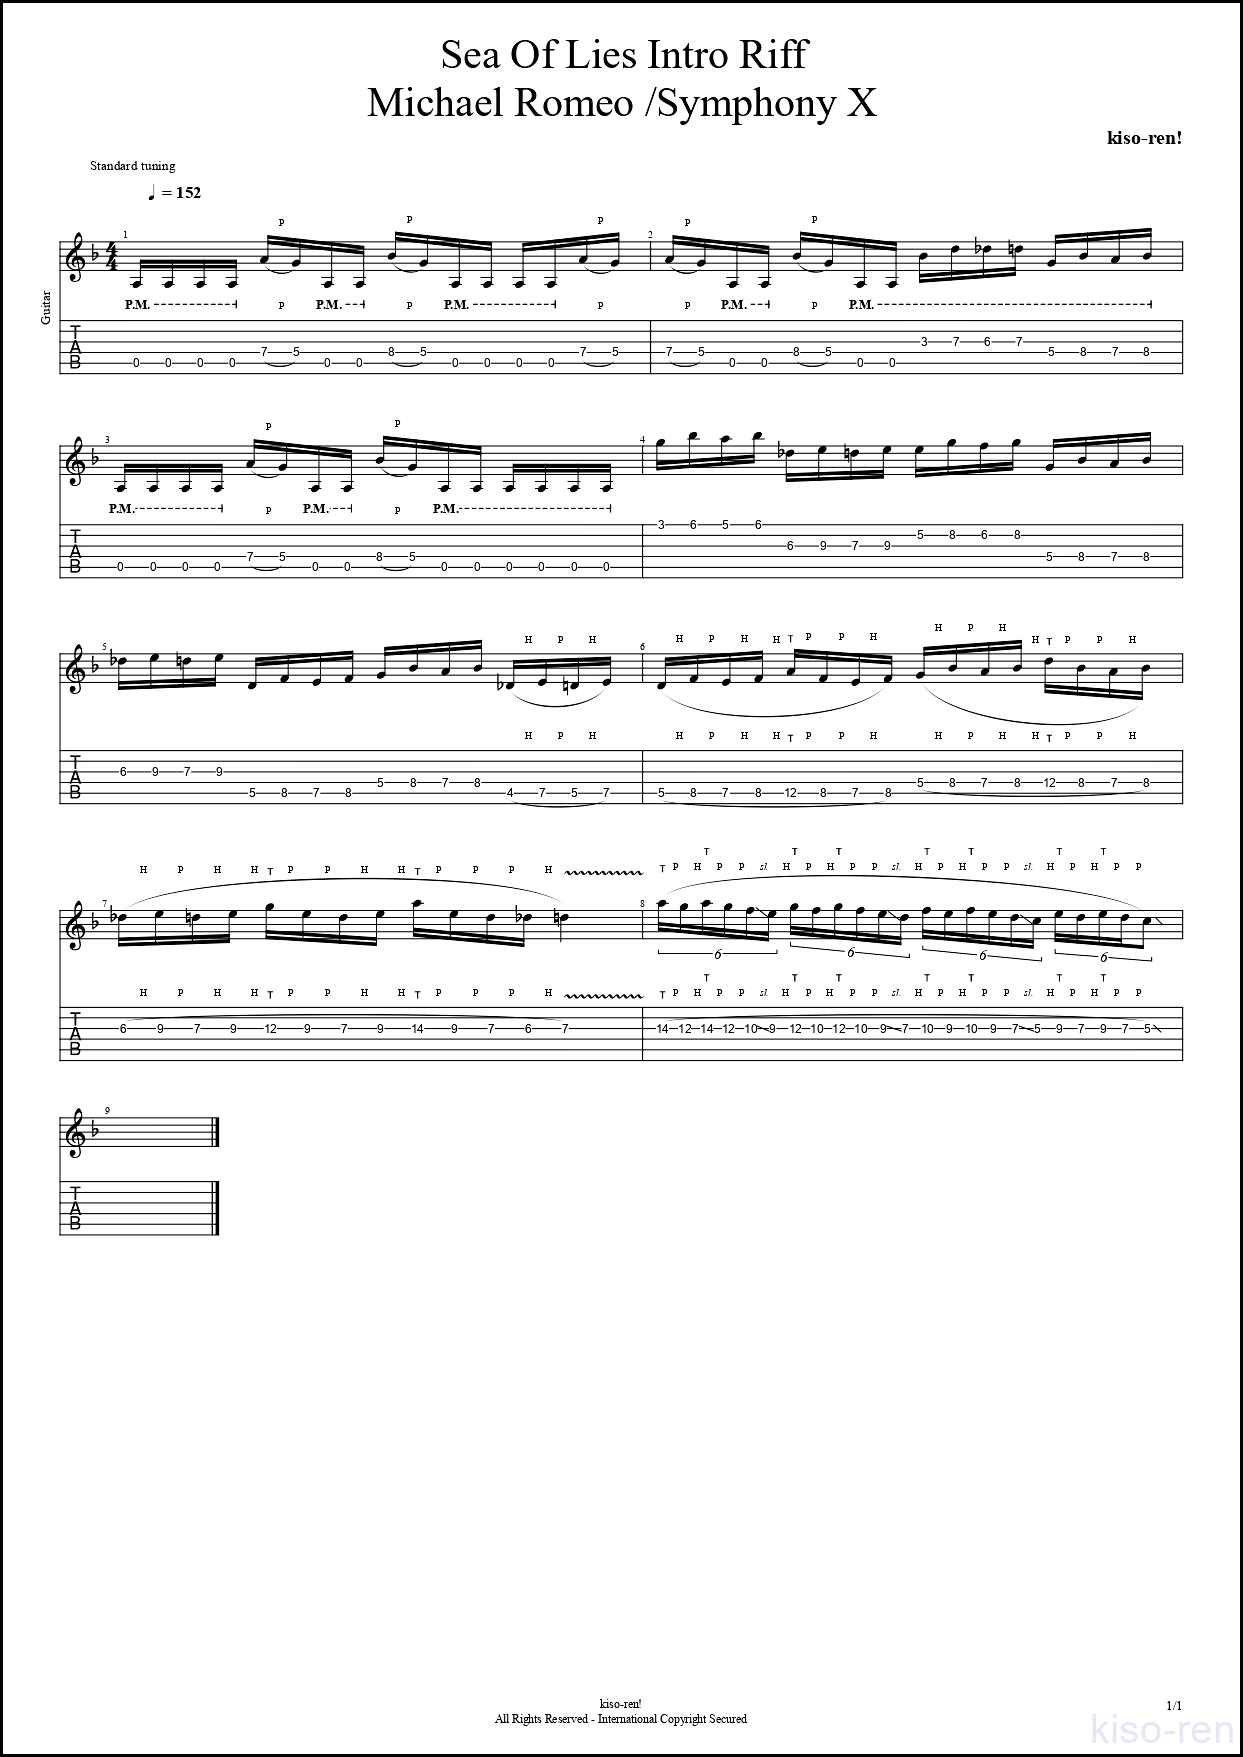 【ギタータッピング上達基礎練習楽譜TAB】Sea Of Lies / Symphony X Intro Guitar Michael Romeo シンフォニーX マイケルロメオ ギター基礎練習 BPM70-152【Picking･Tapping】【ライトハンド】